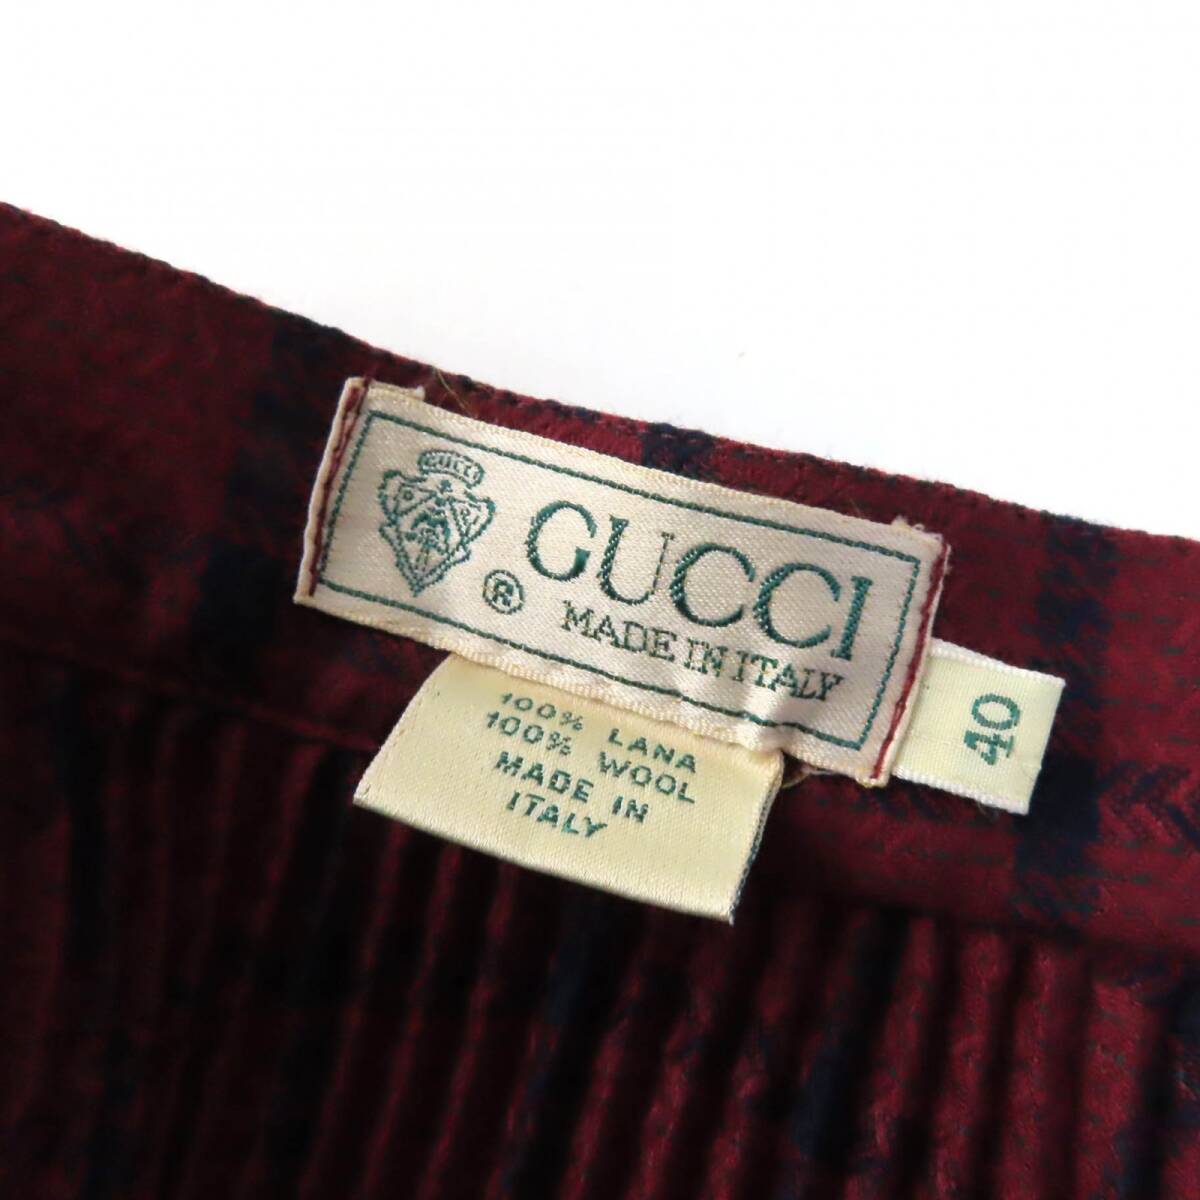  превосходный товар *GUCCI Gucci Vintage шерсть 100% редкий * в клетку длинный длина юбка в складку бордо темно-синий 40 сделано в Италии женский 